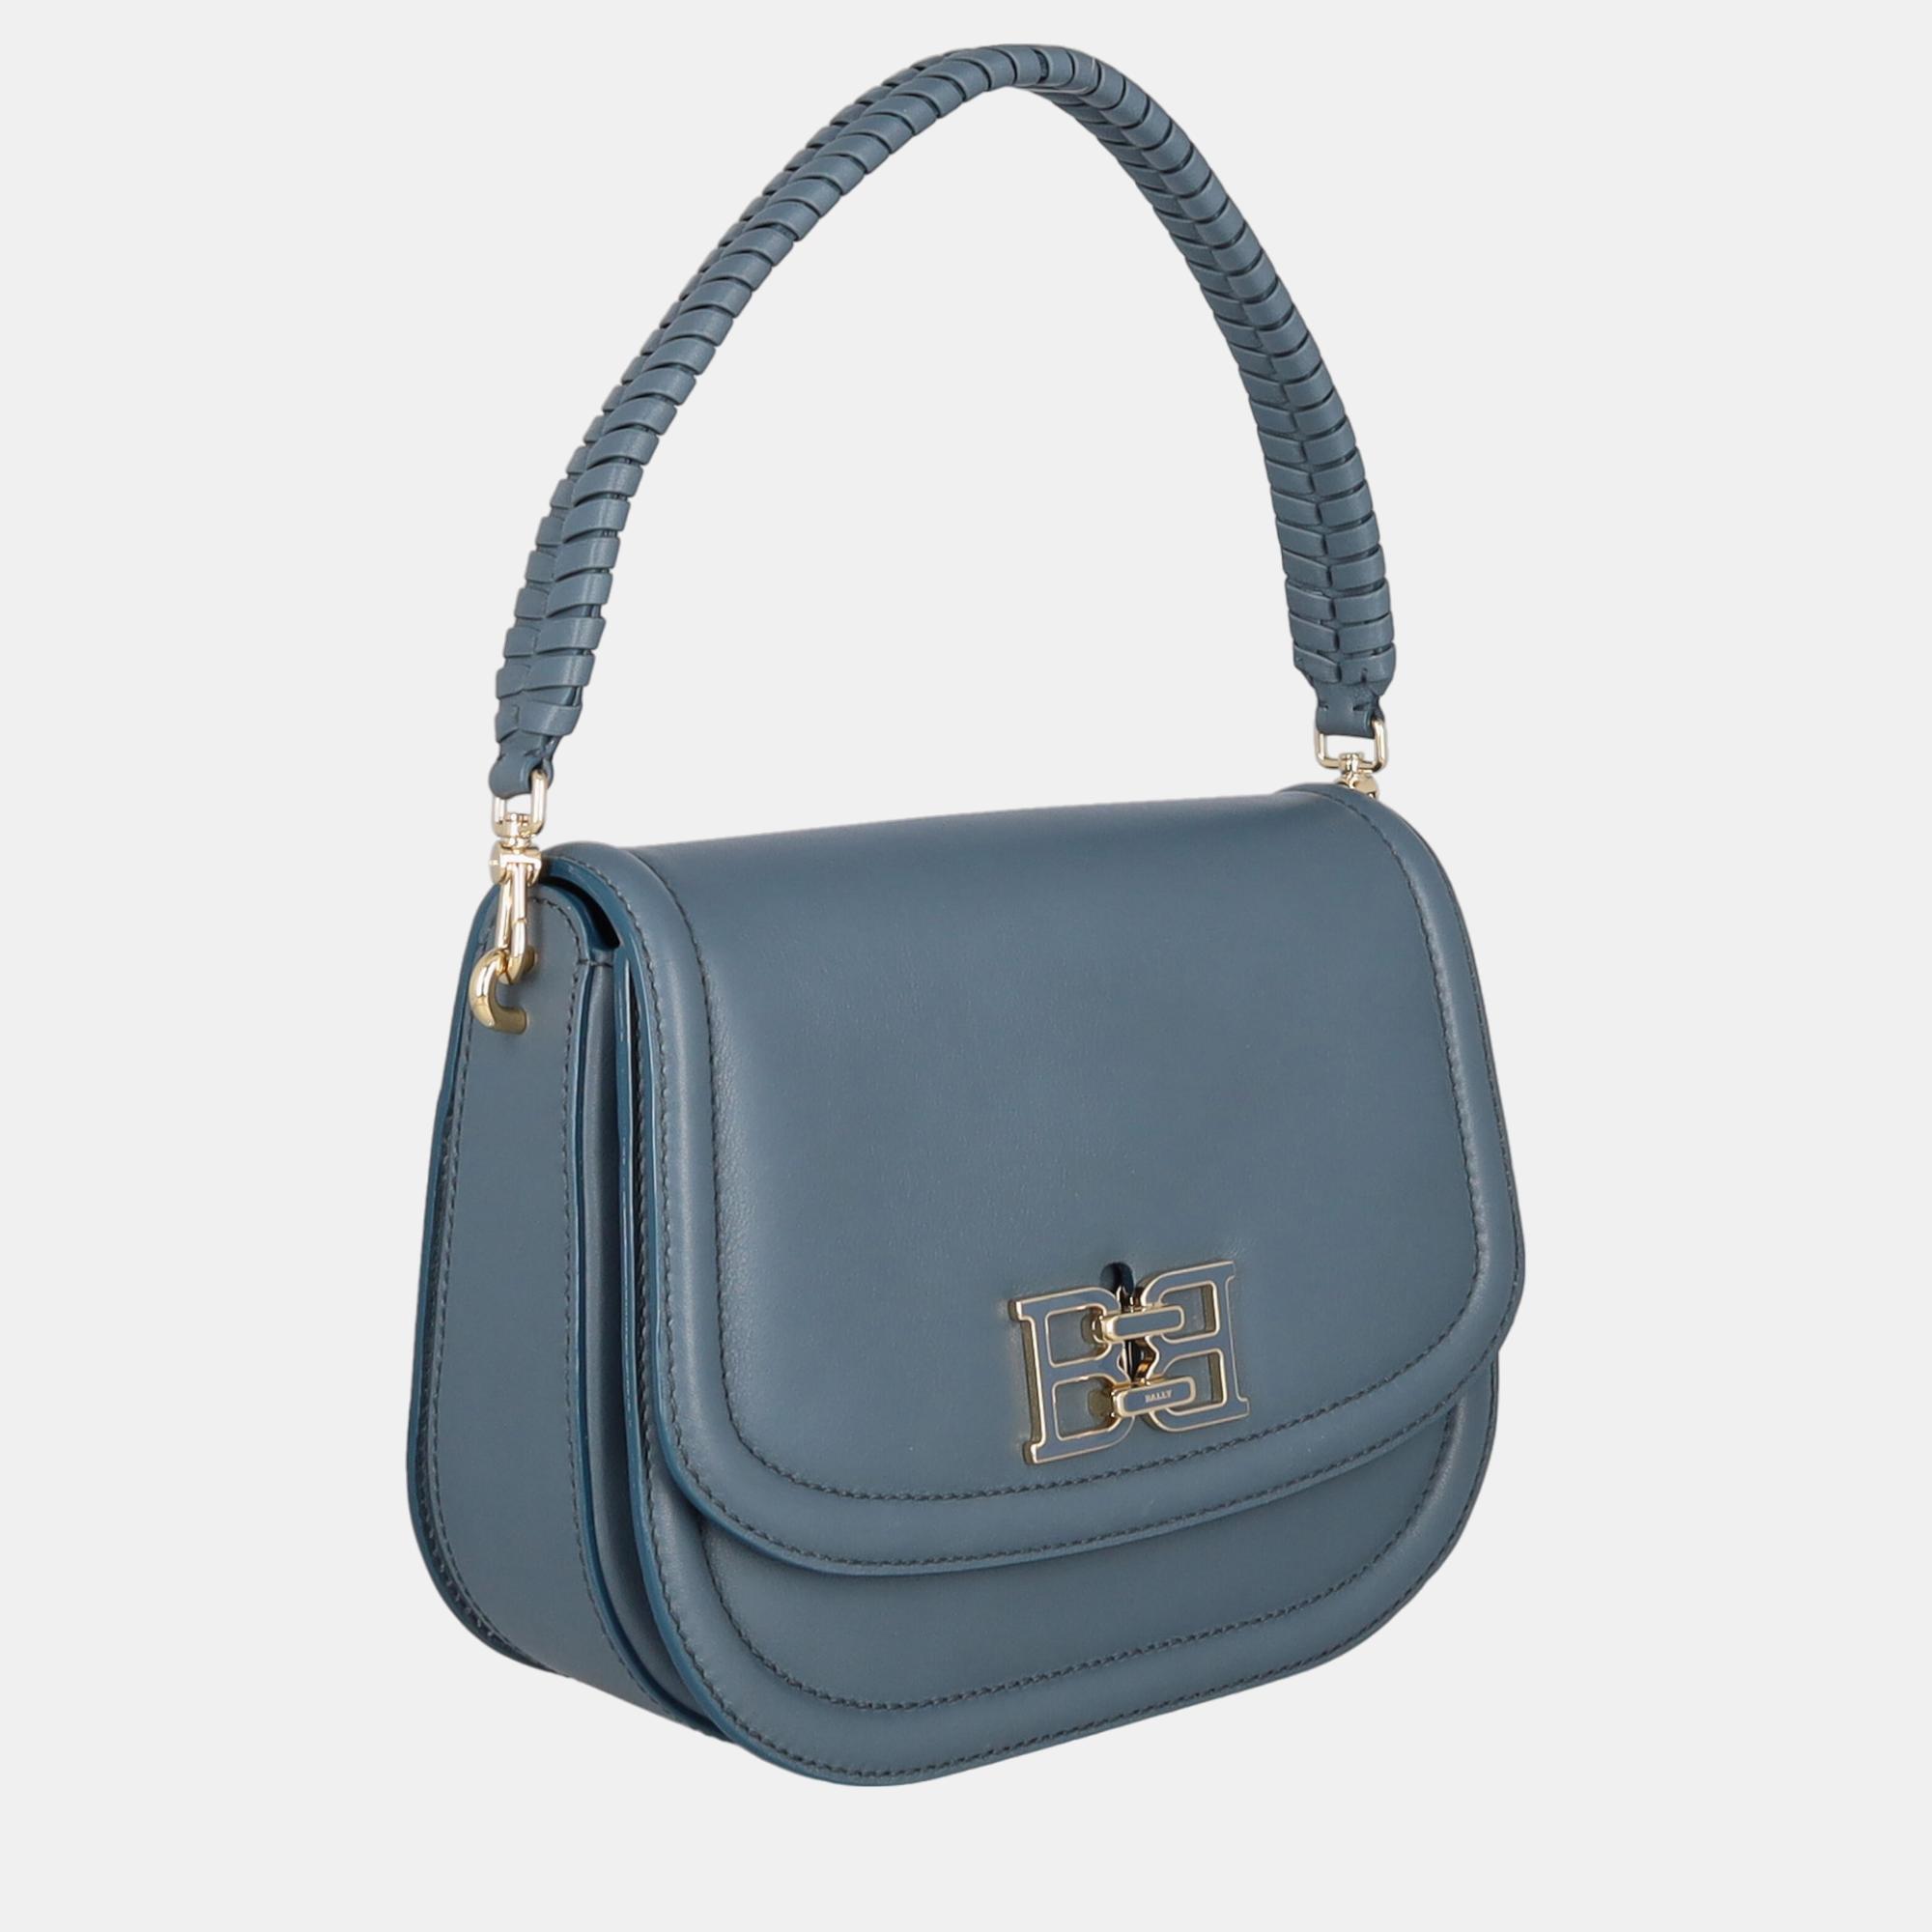 

Bally Women's Leather Hobo Bag - Navy, Navy blue